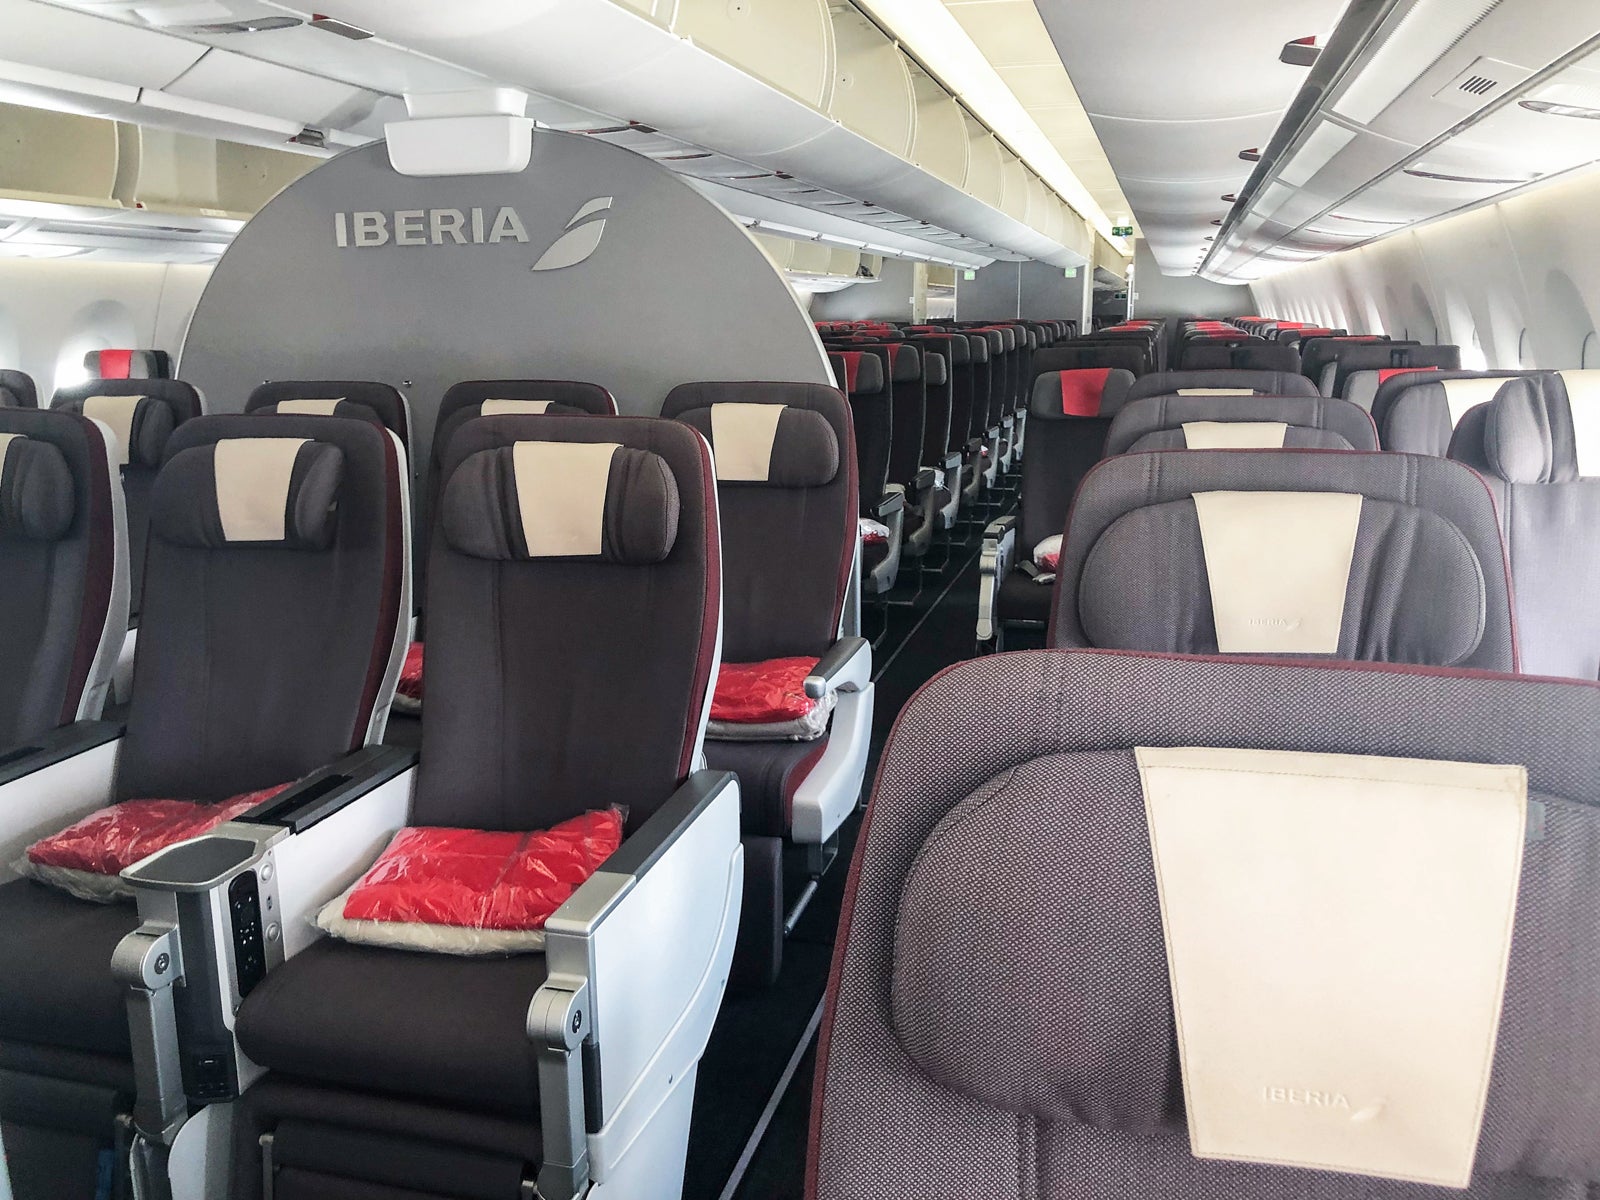 Iberia Airbus A350 premium economy